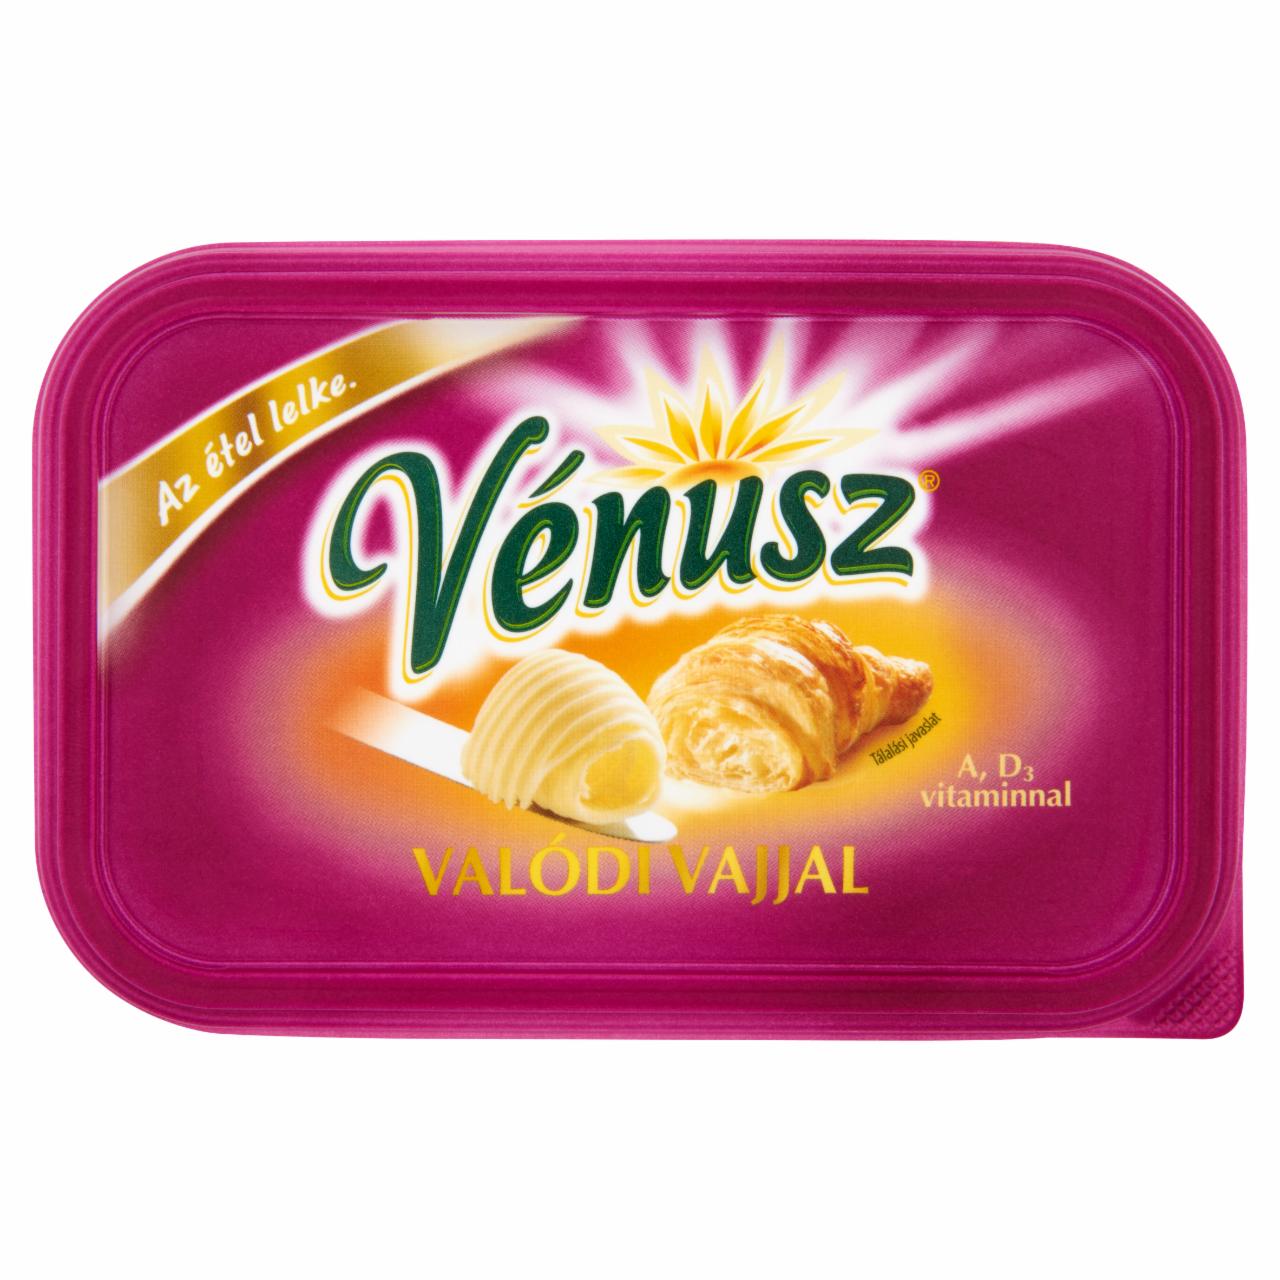 Képek - Vénusz Valódi Vajjal margarin és vaj csökkentett zsírtartalmú keveréke 400 g